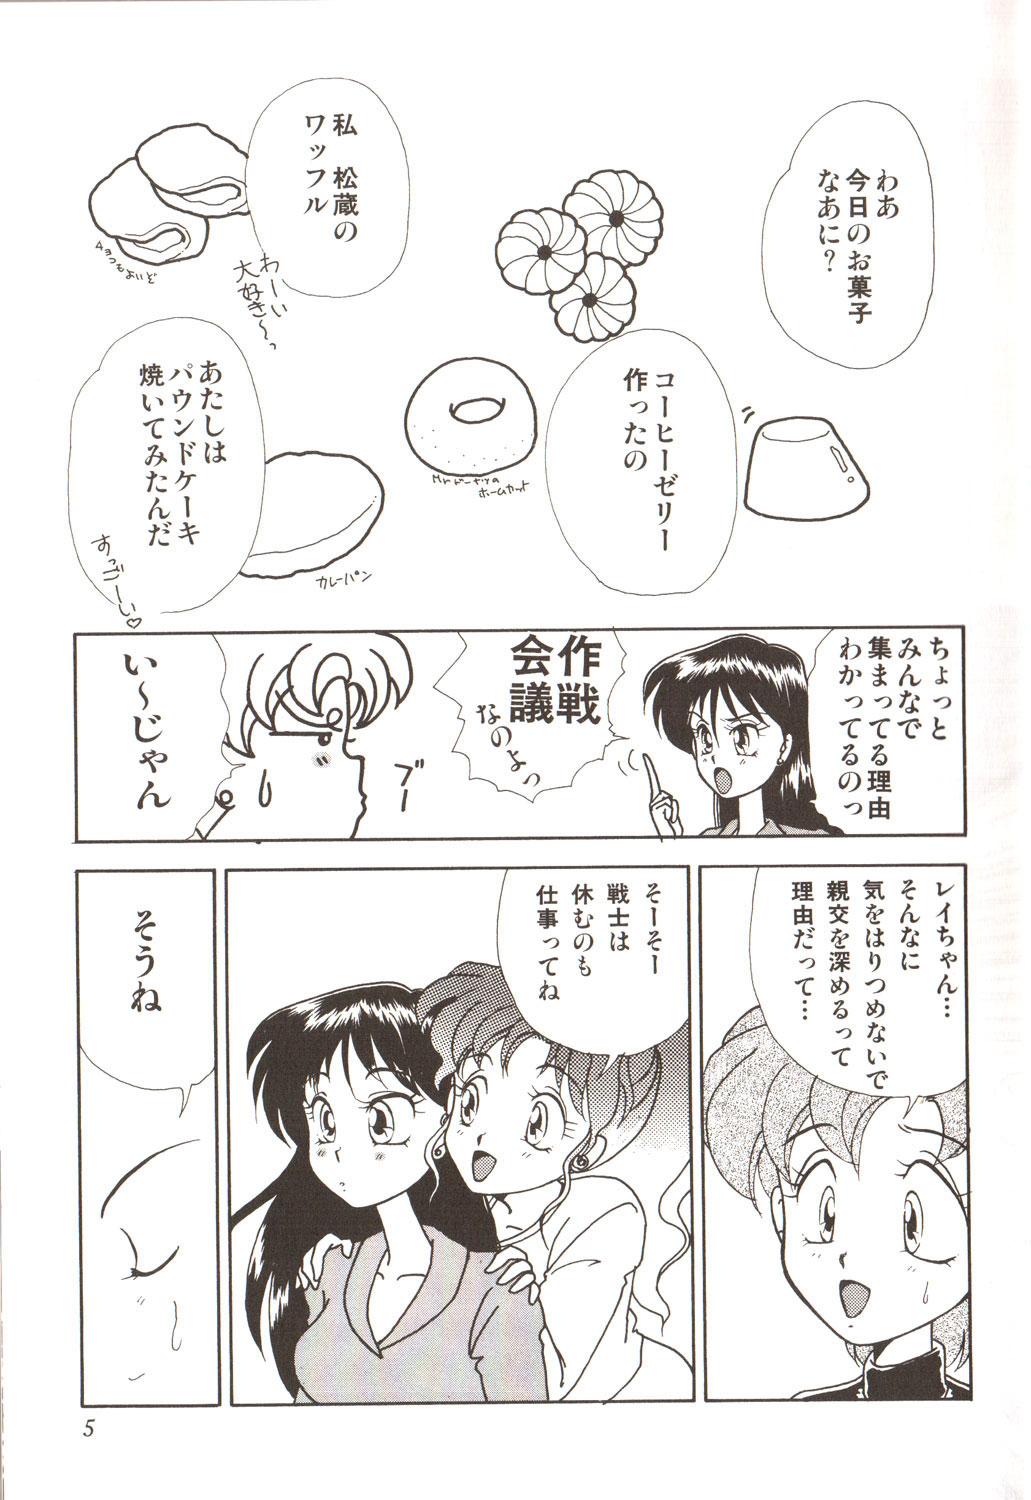 Emo Lunatic Party 3 - Sailor moon Amateur Blowjob - Page 9